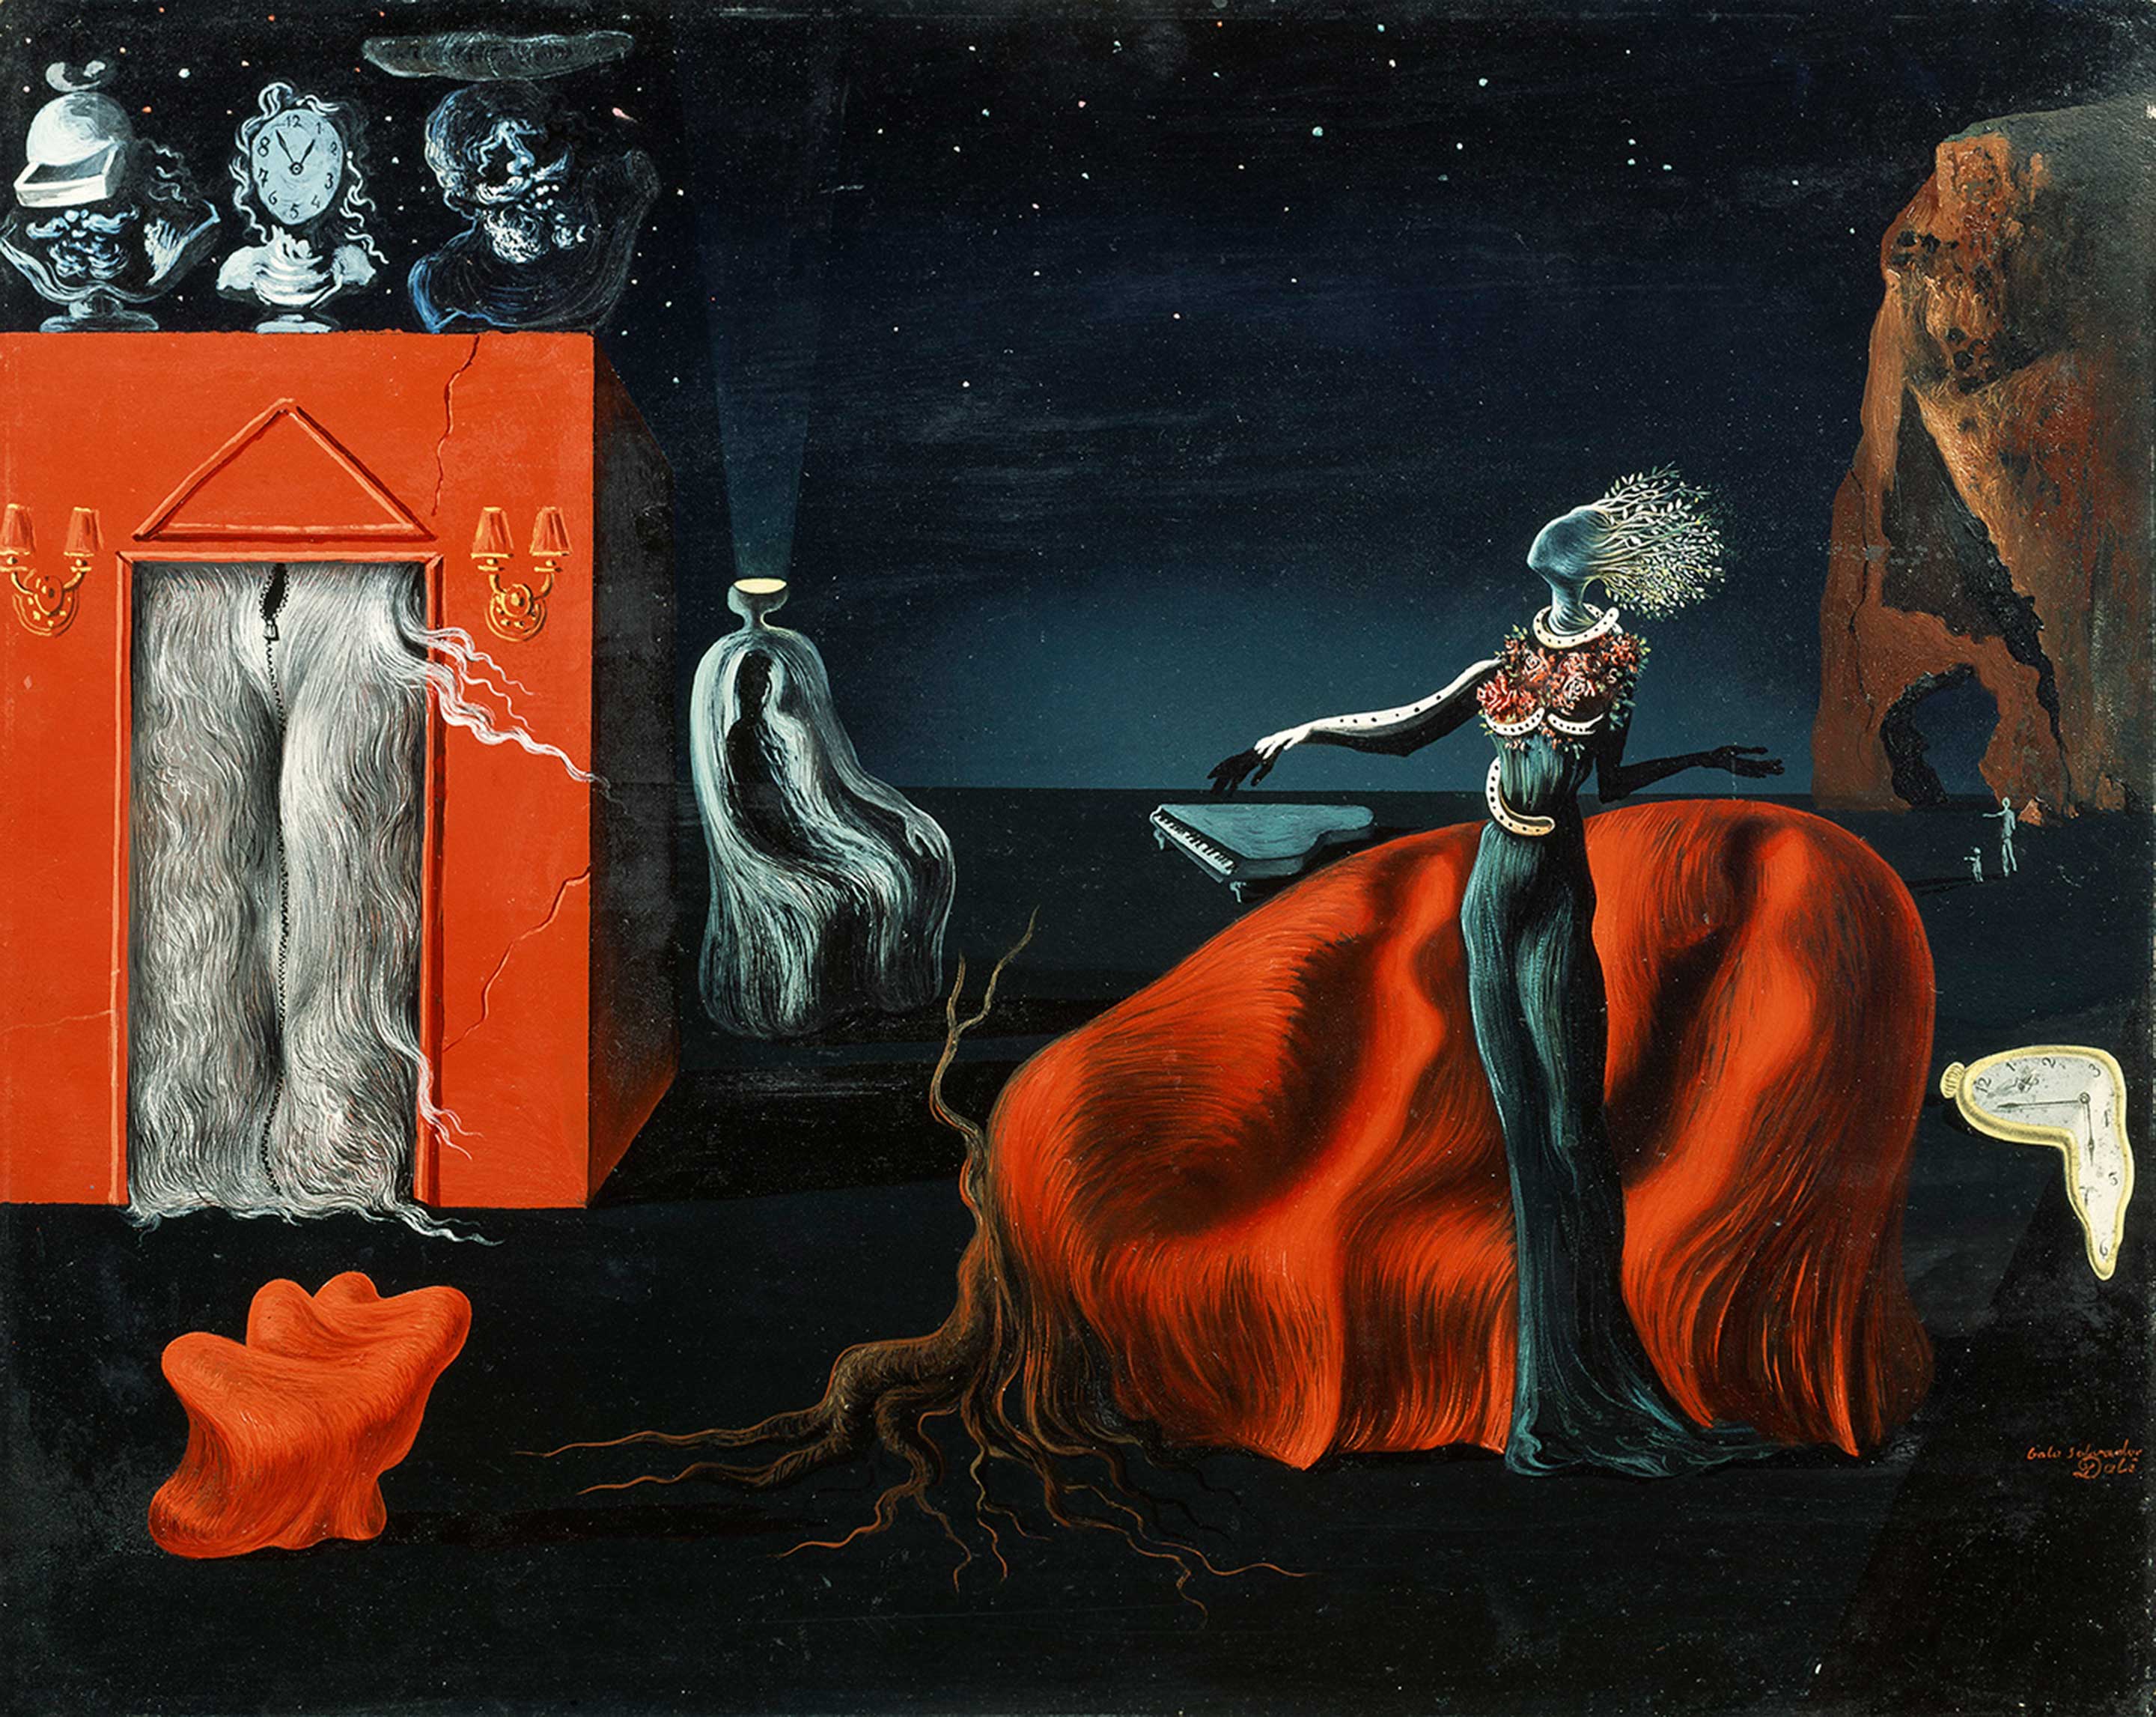 サルバドール・ダリ 《奇妙なものたち》 1935 年頃、40.5×50.0 cm、板に油彩、コラージュ、ガラ=サルバドール・ダリ財団蔵 Collection of the Fundació Gala-Salvador Dalí, Figueres © Salvador Dalí, Fundació Gala-Salvador Dalí, JASPAR, Japan,2016. 